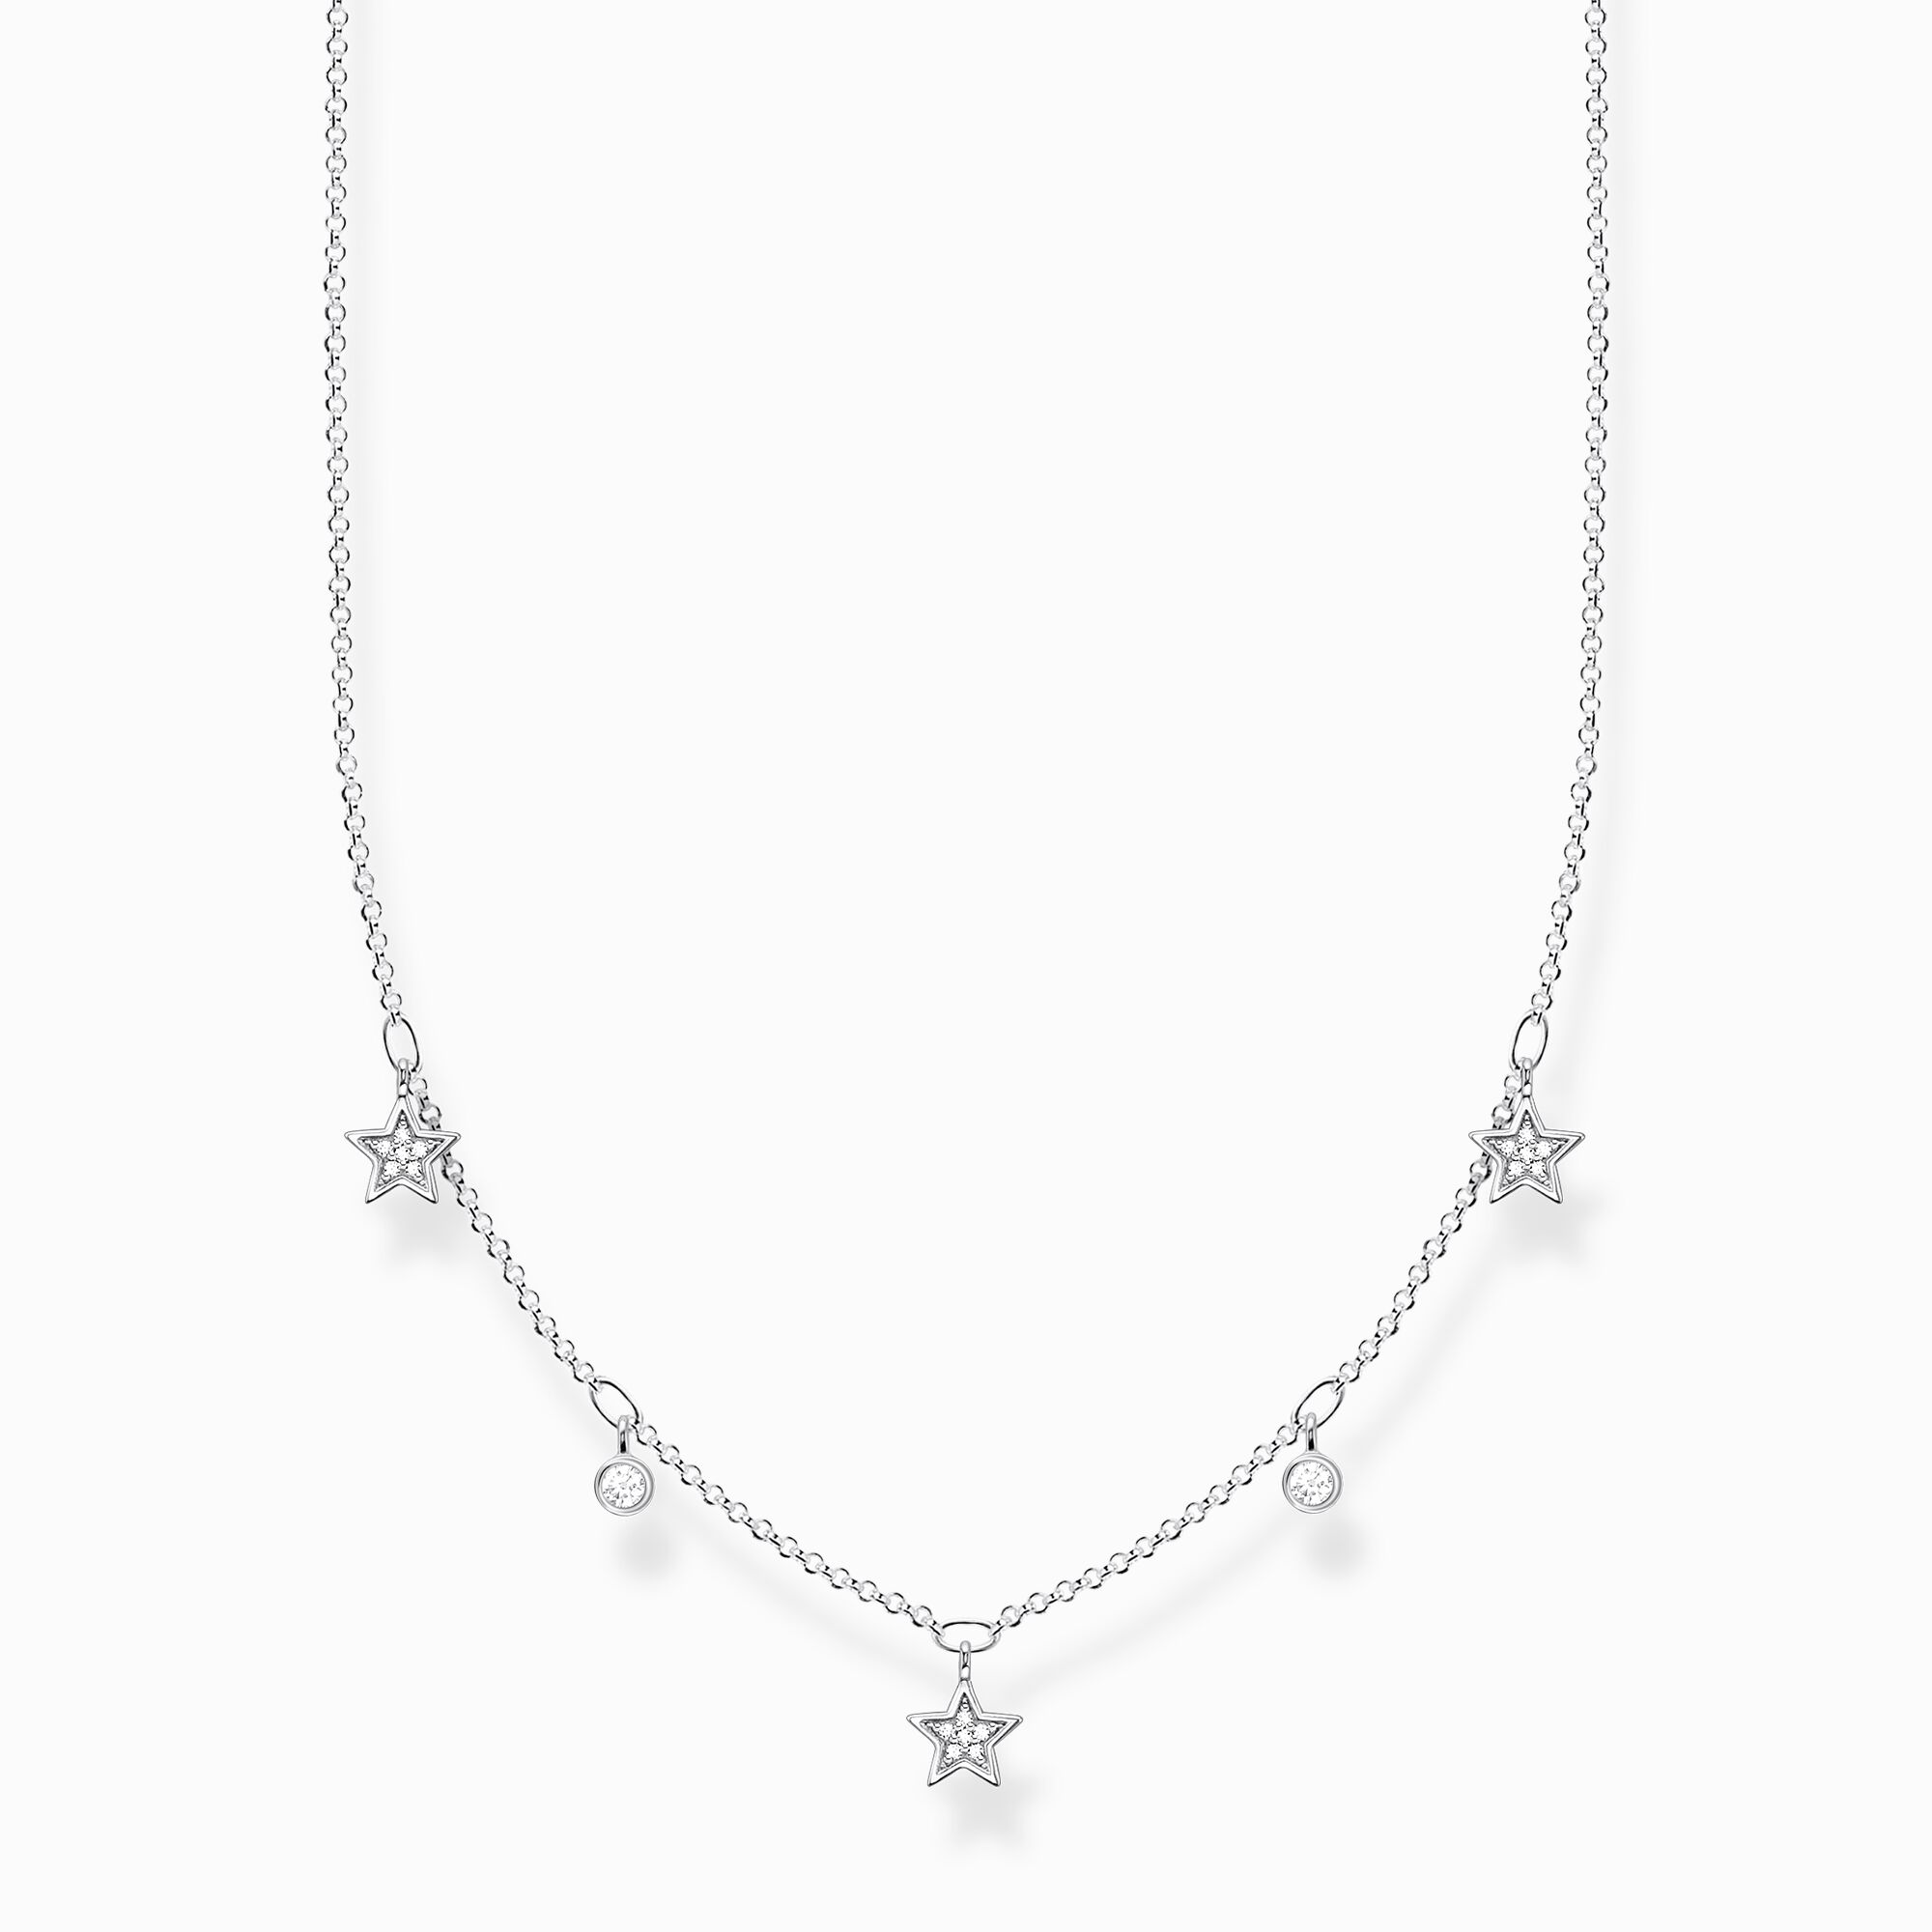 Kette Sterne silber aus der Charming Collection Kollektion im Online Shop von THOMAS SABO